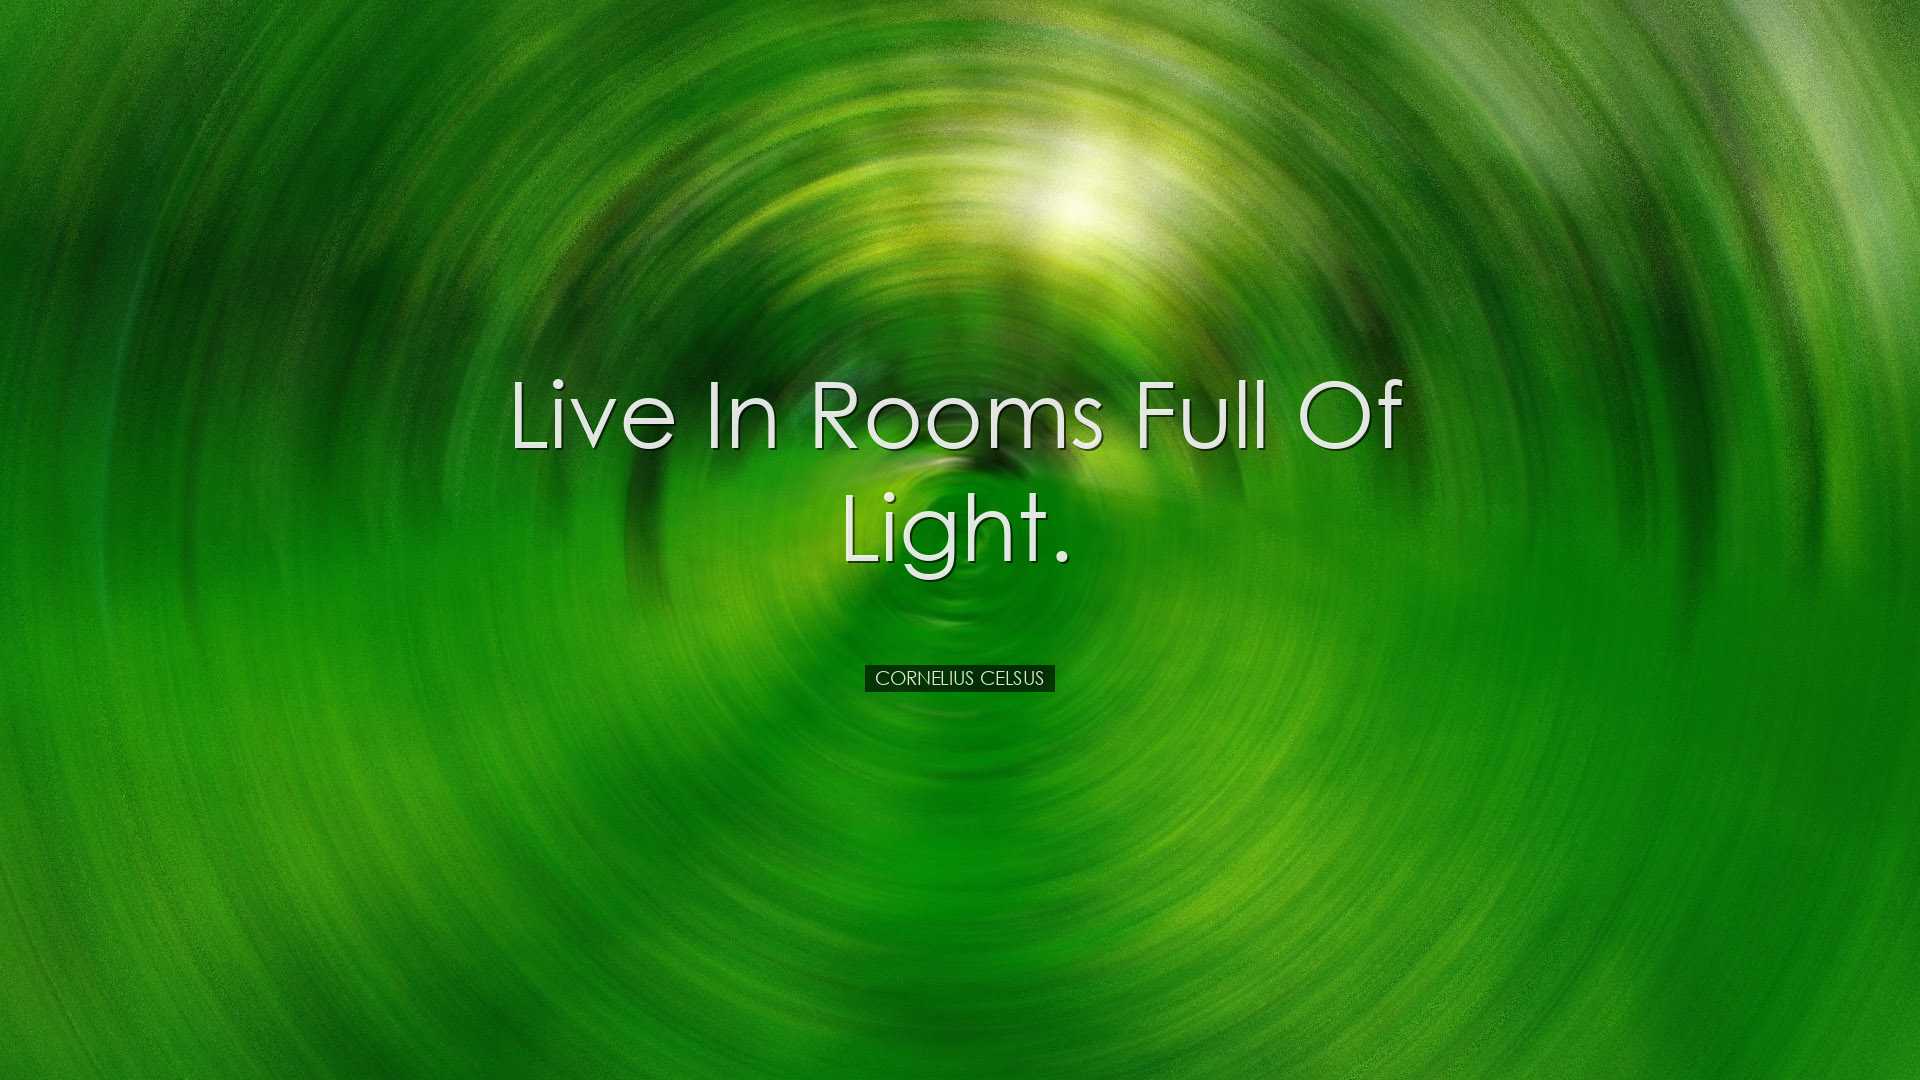 Live in rooms full of light. - Cornelius Celsus